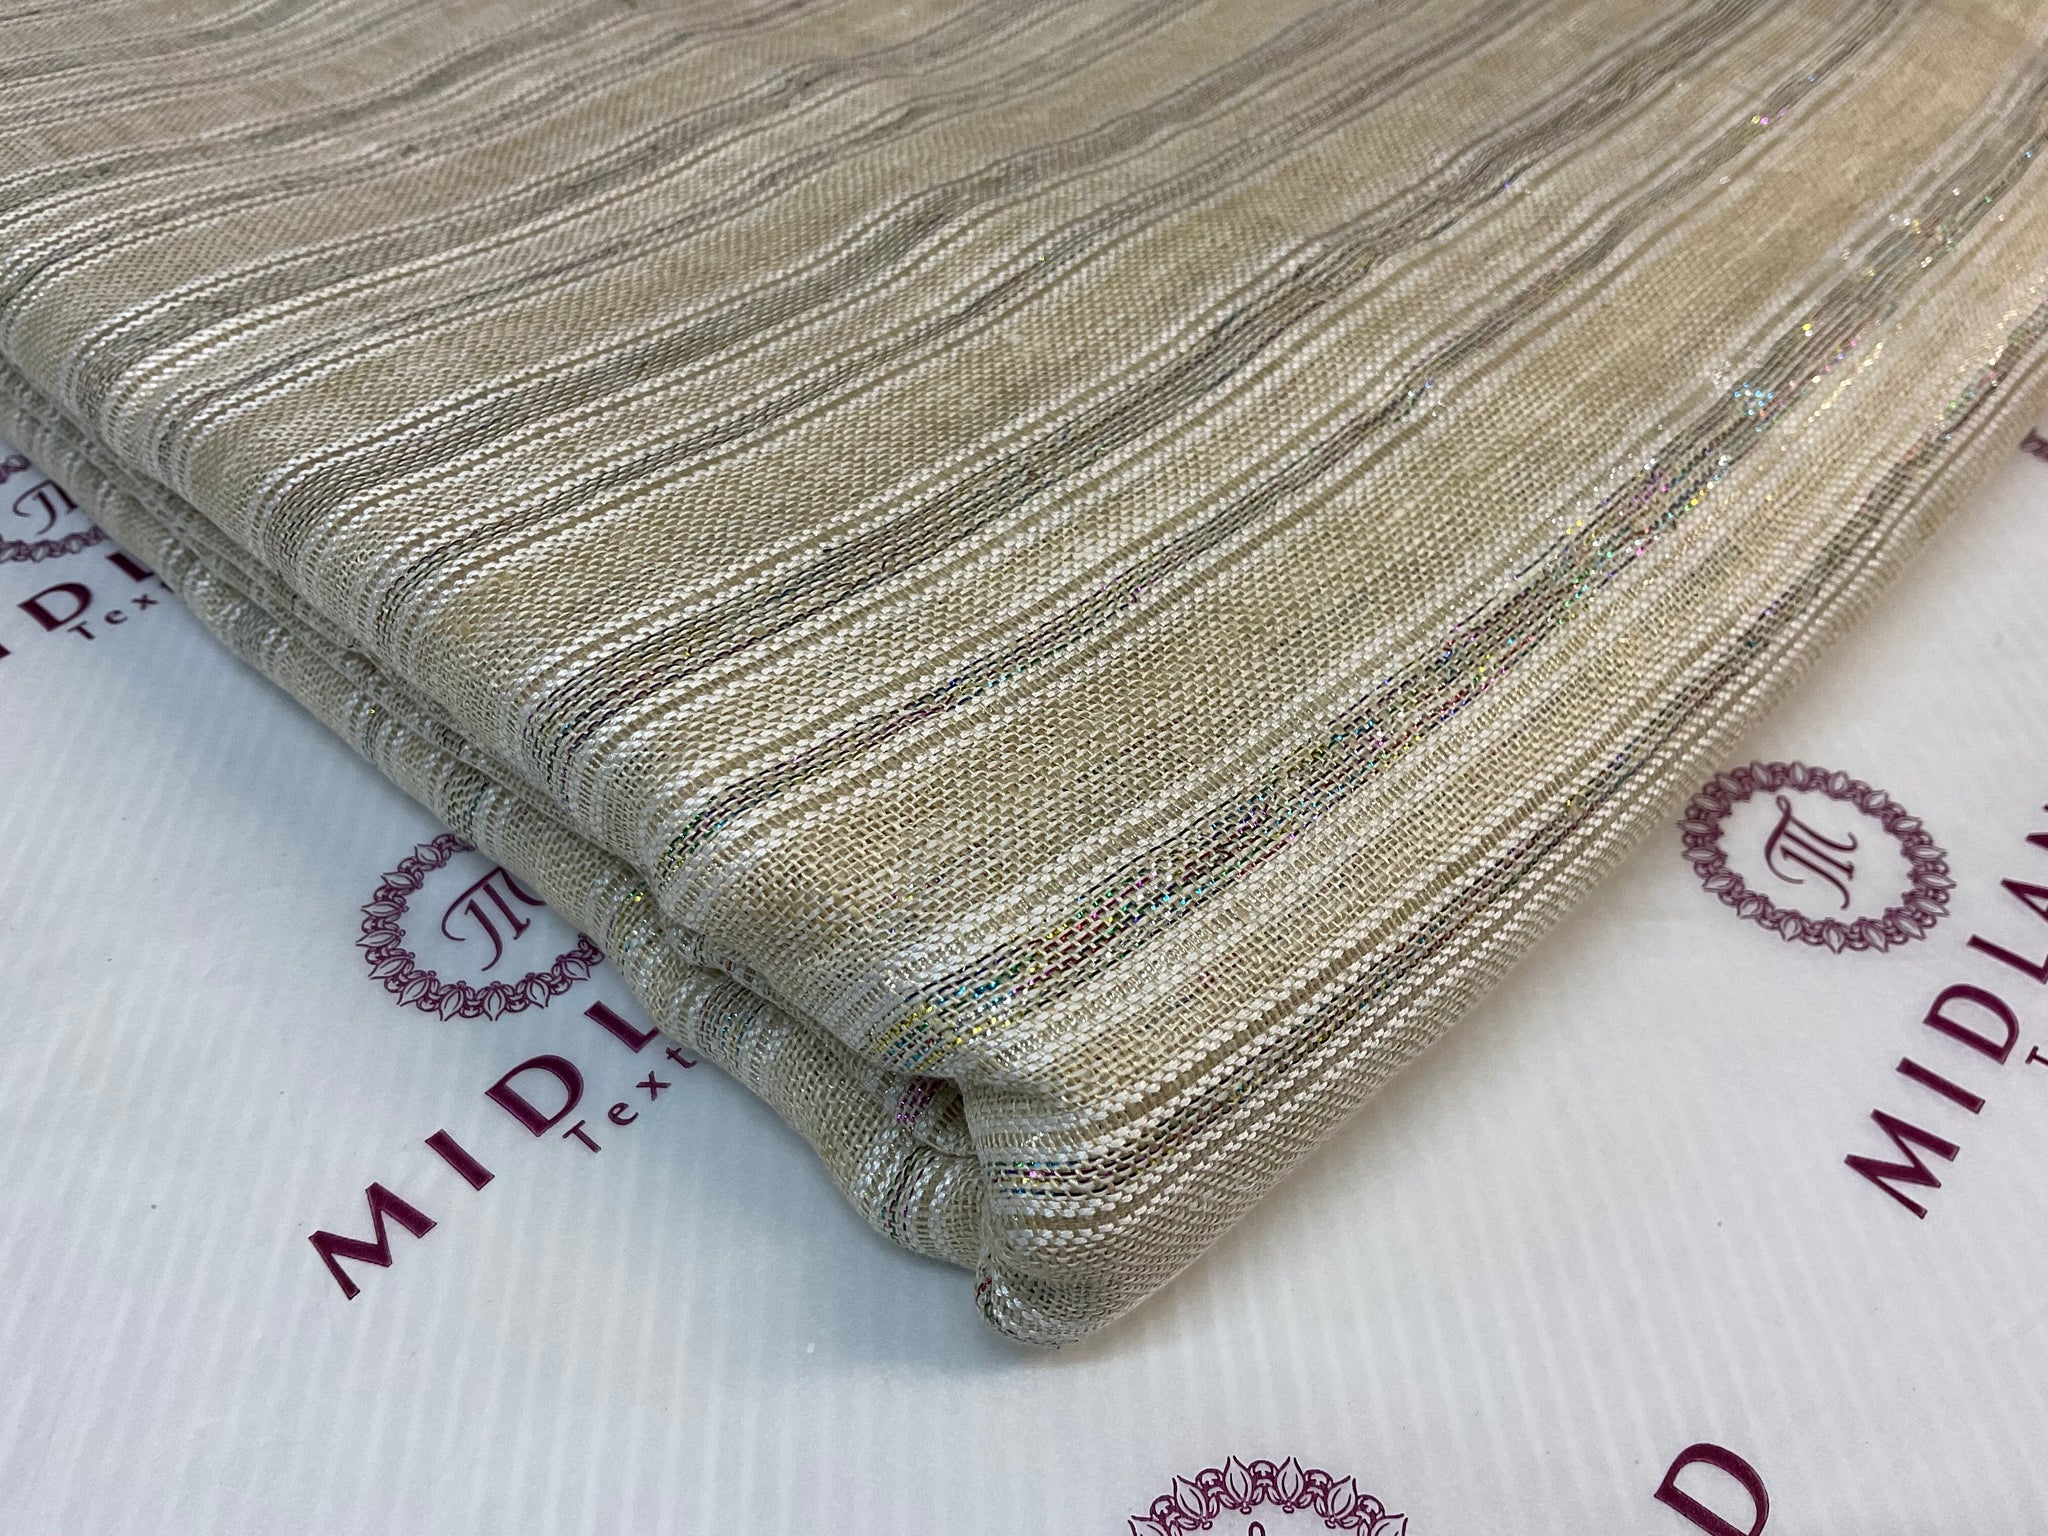 Stripped Handloom Linen dress Fabric 114cm wide M1771